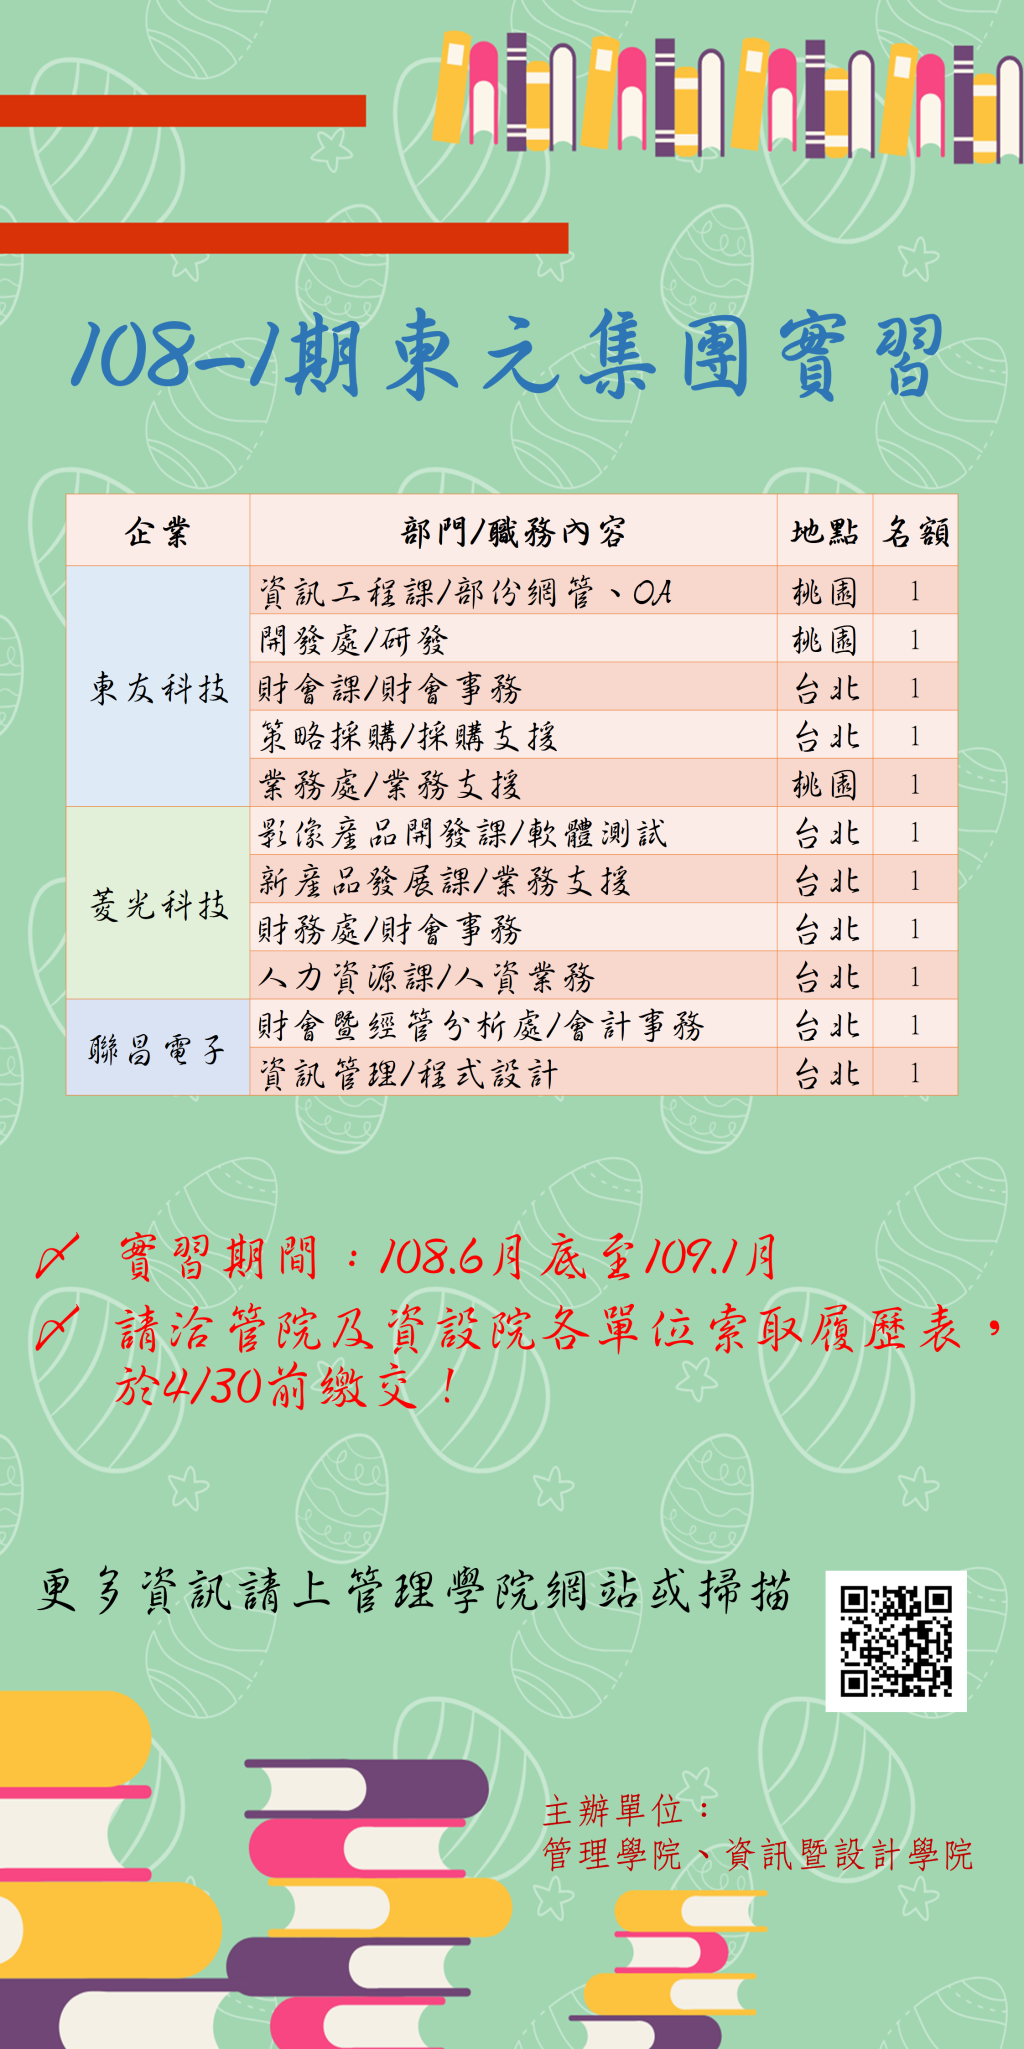 [實習公告] 東元集團108-1期實習，意者請於4/30前繳交履歷